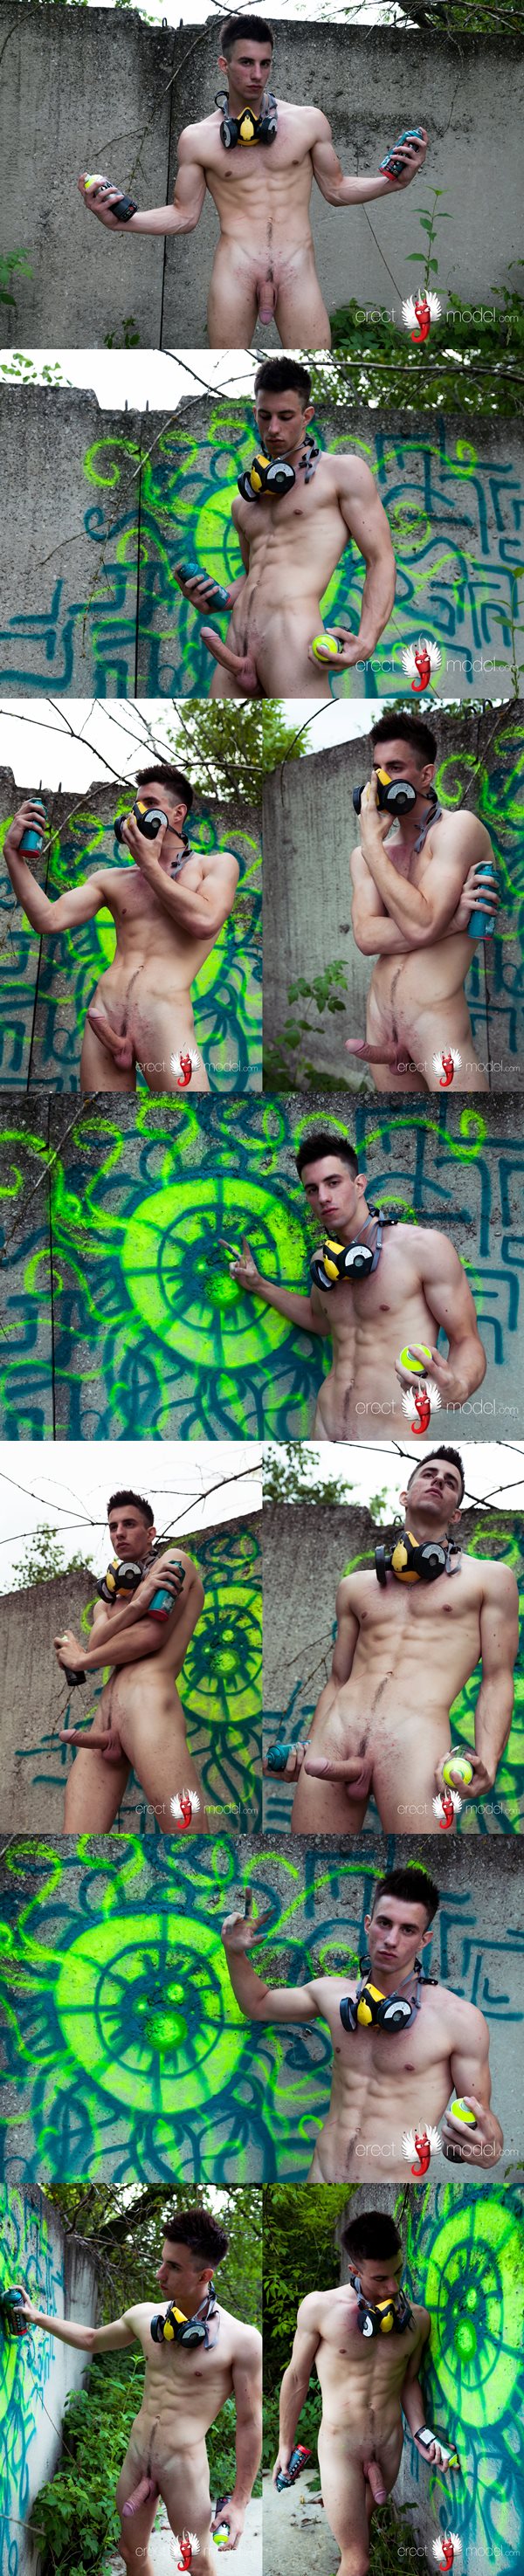 Hung naked jock Vasya draws graffiti in Young gay outdoor drawing graffiti at Erectmodel